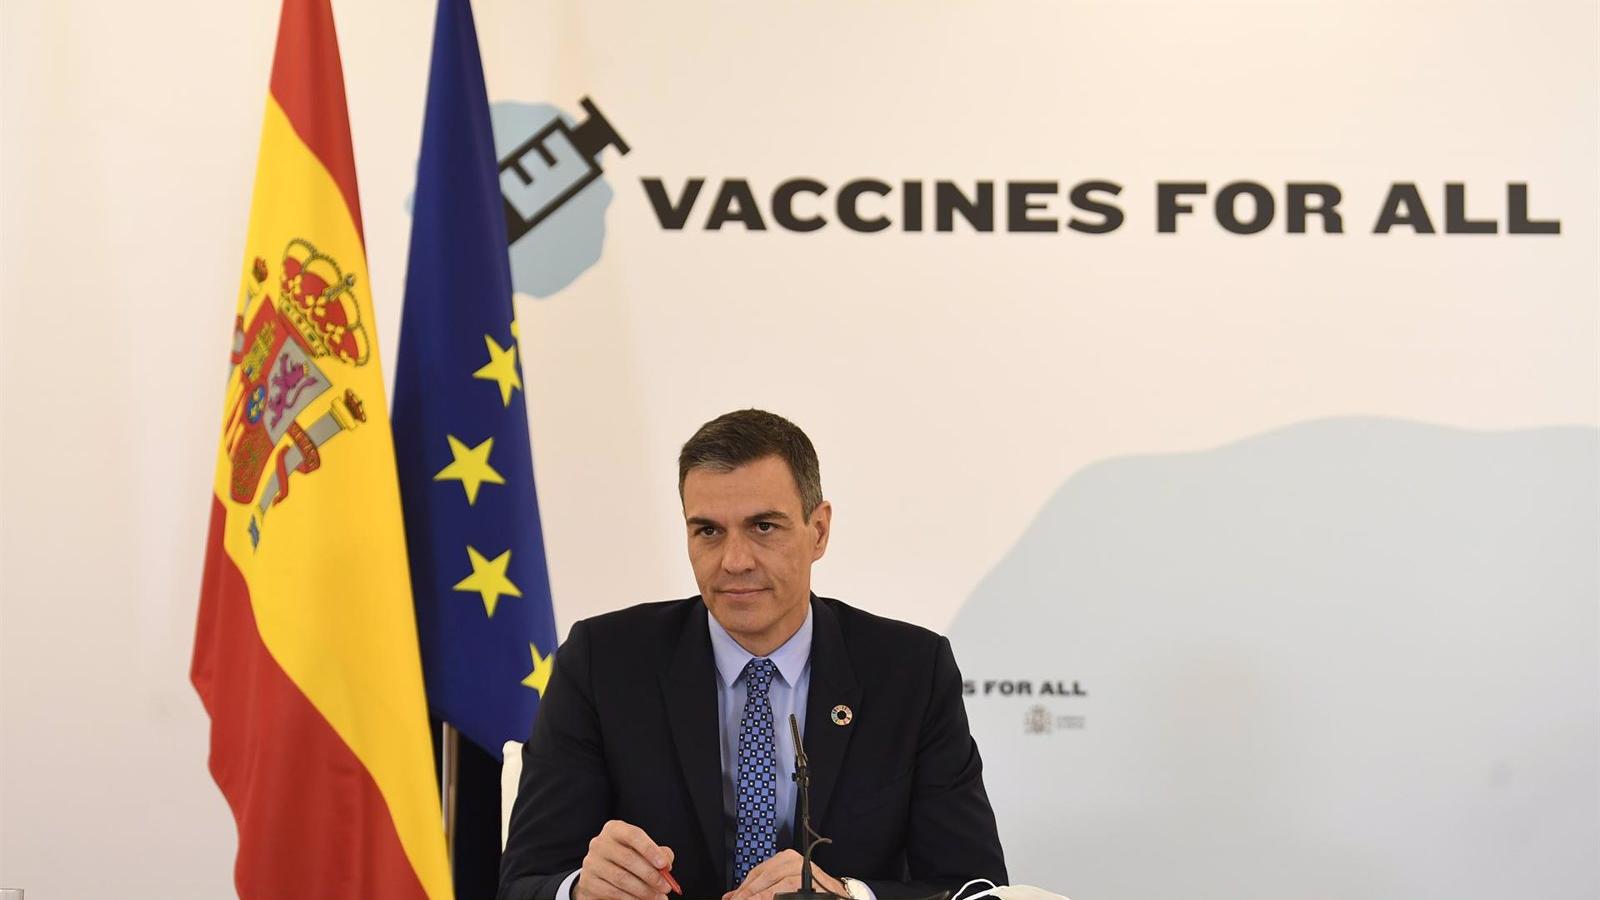 España alcanzará 50 millones de vacunas donadas a países vulnerables en el primer trimestre de 2022